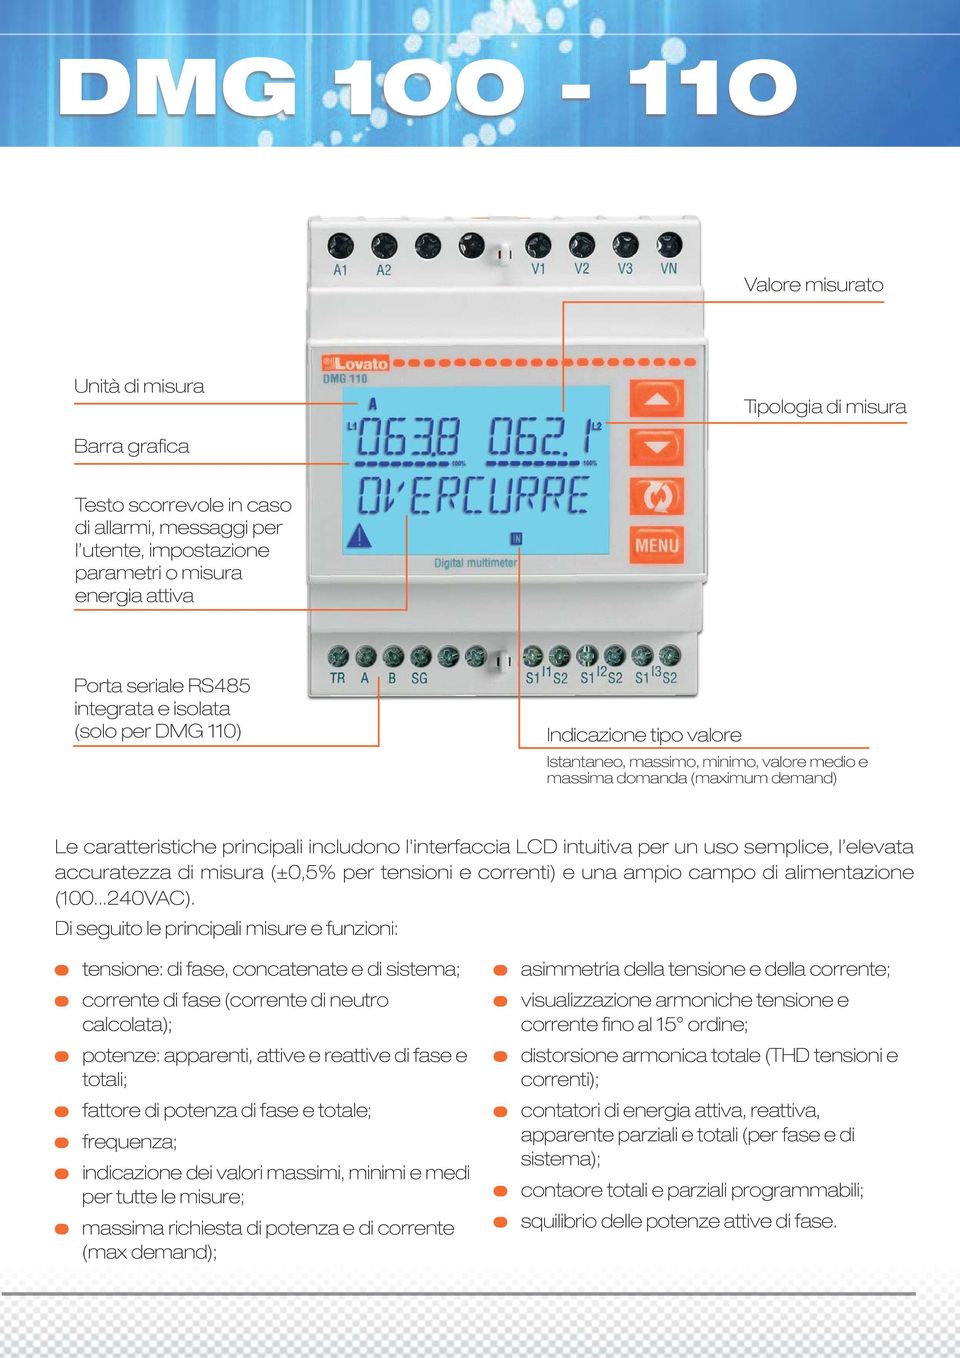 LCD intuitiva per un uso semplice, l elevata accuratezza di misura (±0,5% per tensioni e correnti) e una ampio campo di alimentazione (100...240VAC).